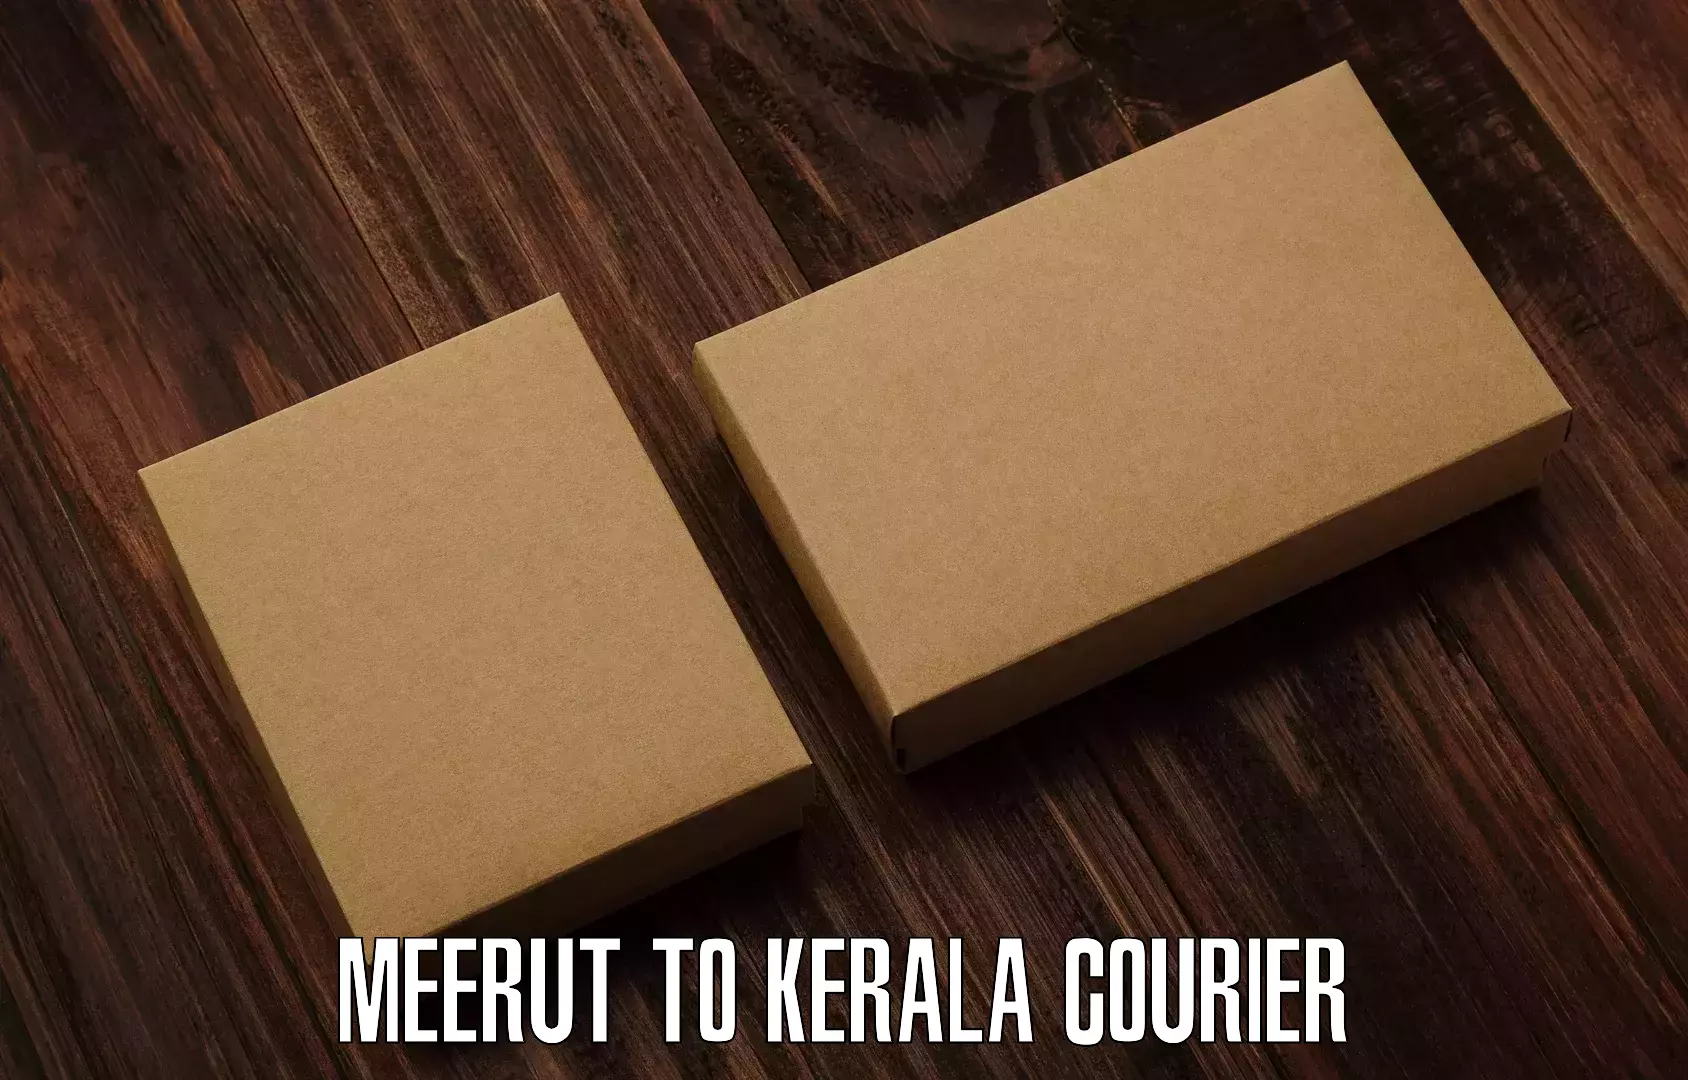 Affordable parcel service Meerut to Kiliyanthara